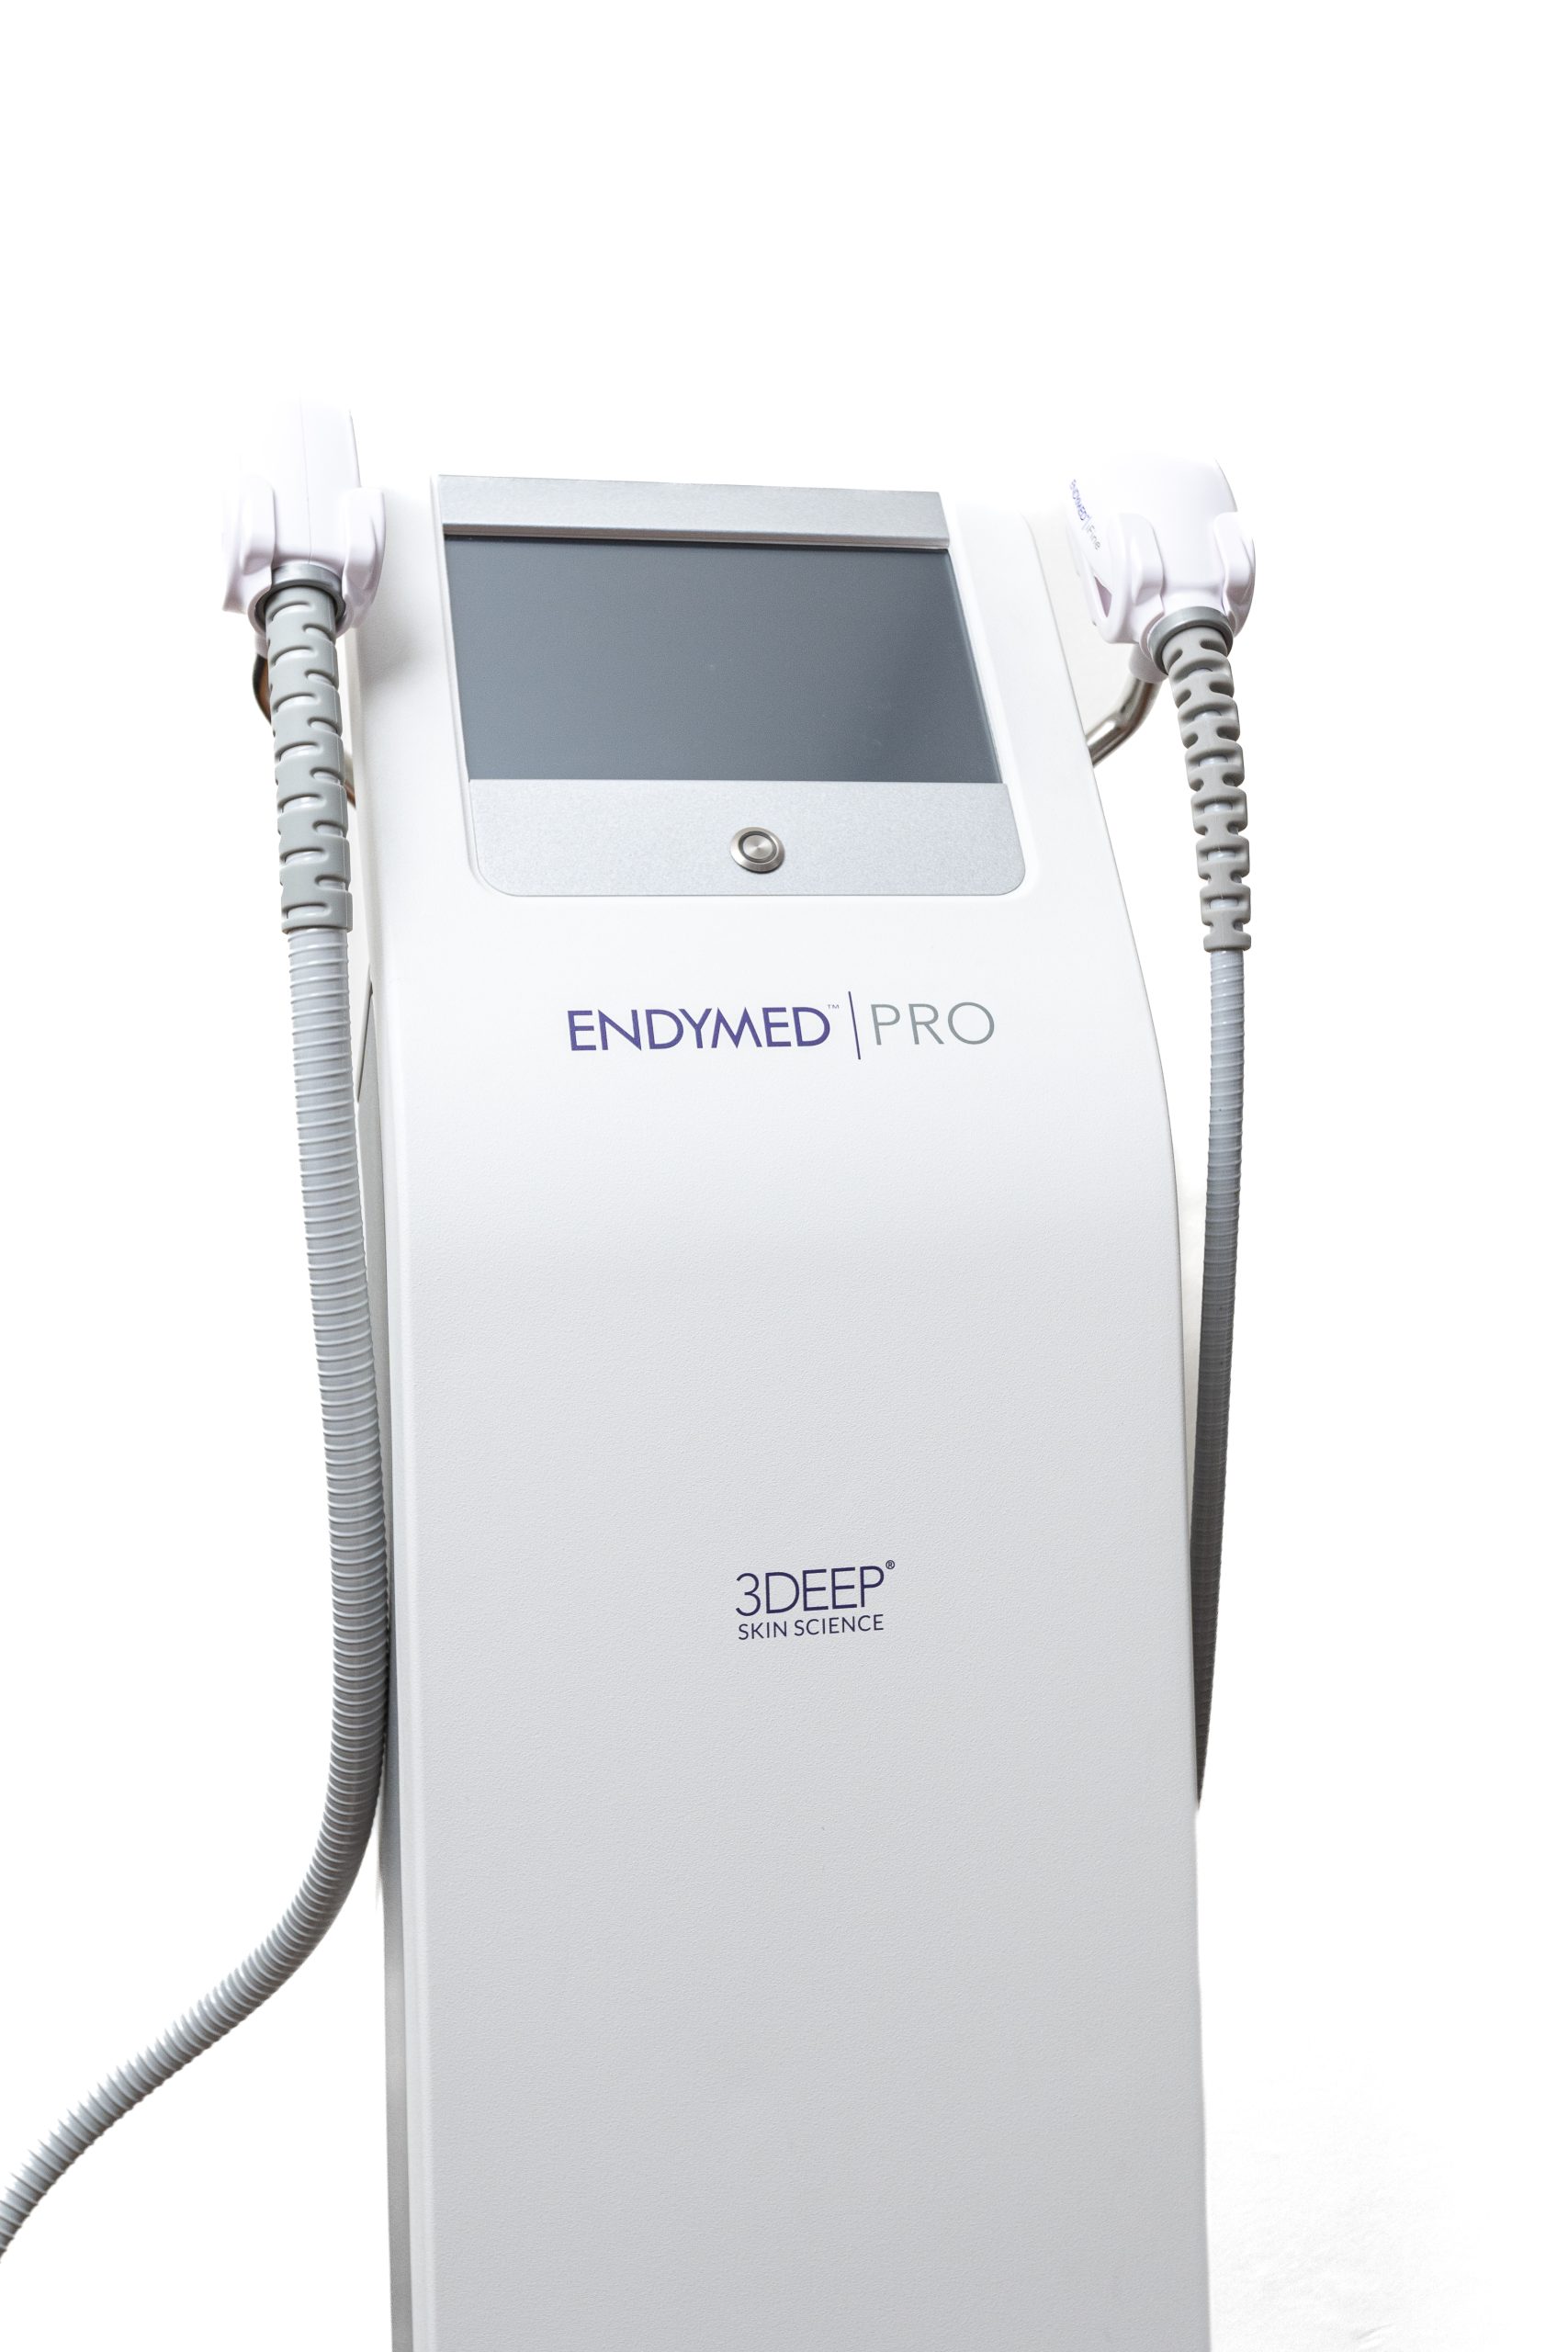 Endymed Pro, radiofrecuencia de tercera generación con tecnología exclusiva 3DEEP para ofrecer resultados excepcionales y seguros